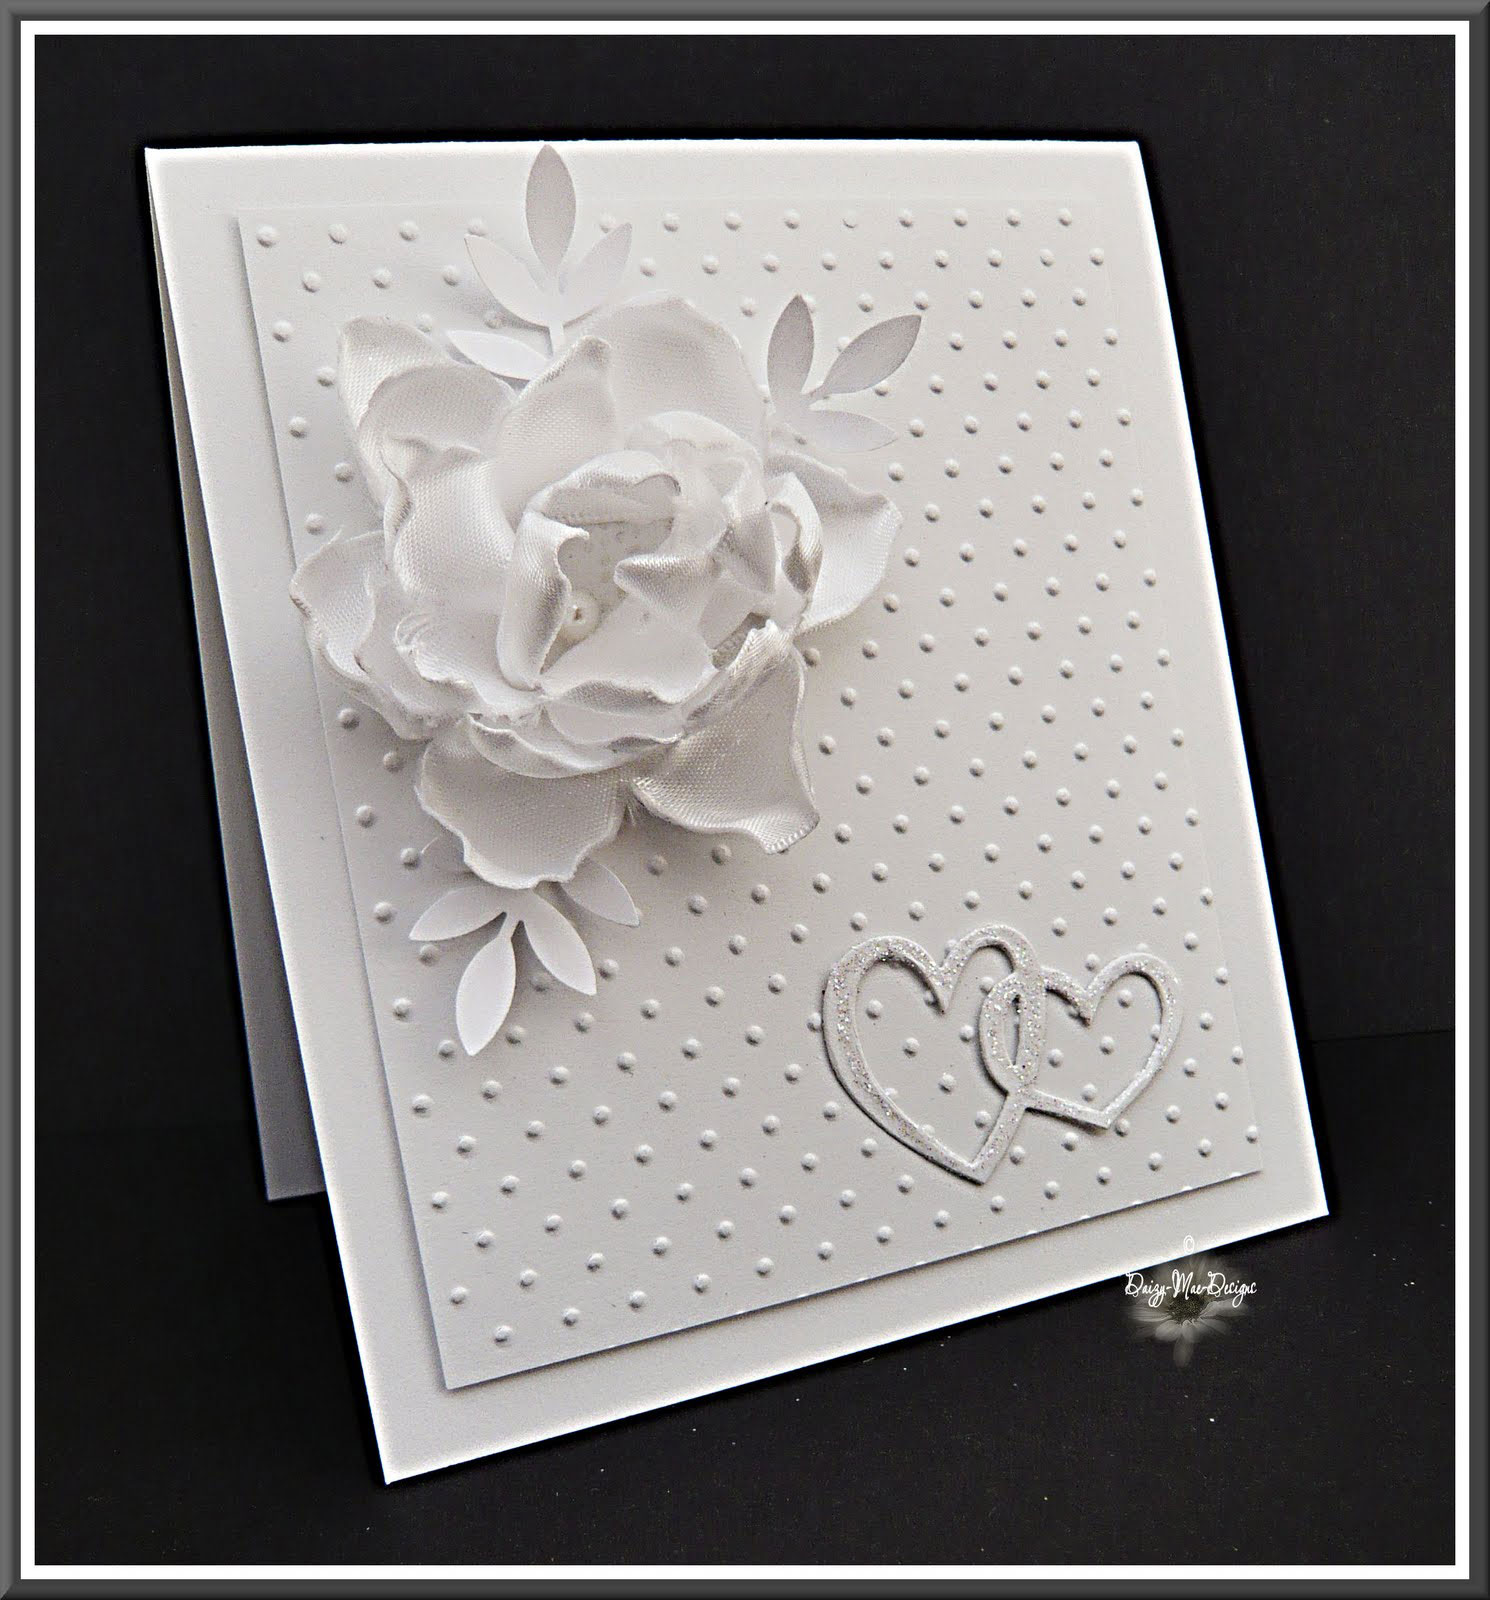 Thiệp cưới đẹp màu trắng đính hoa nổi bằng vải